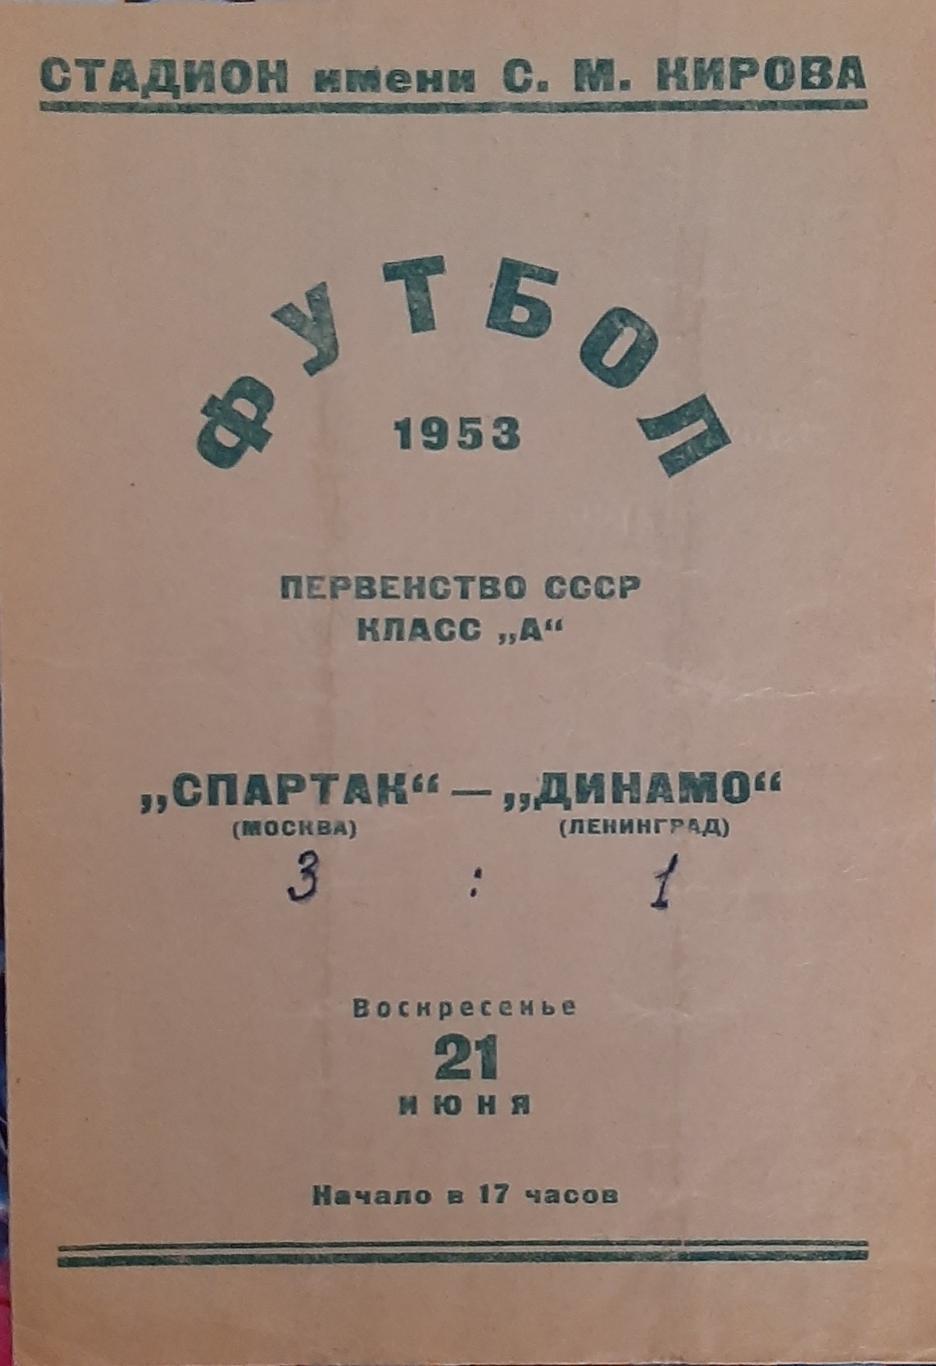 Динамо Ленинград — Спартак Москва 21.06.1953. Официальная программа